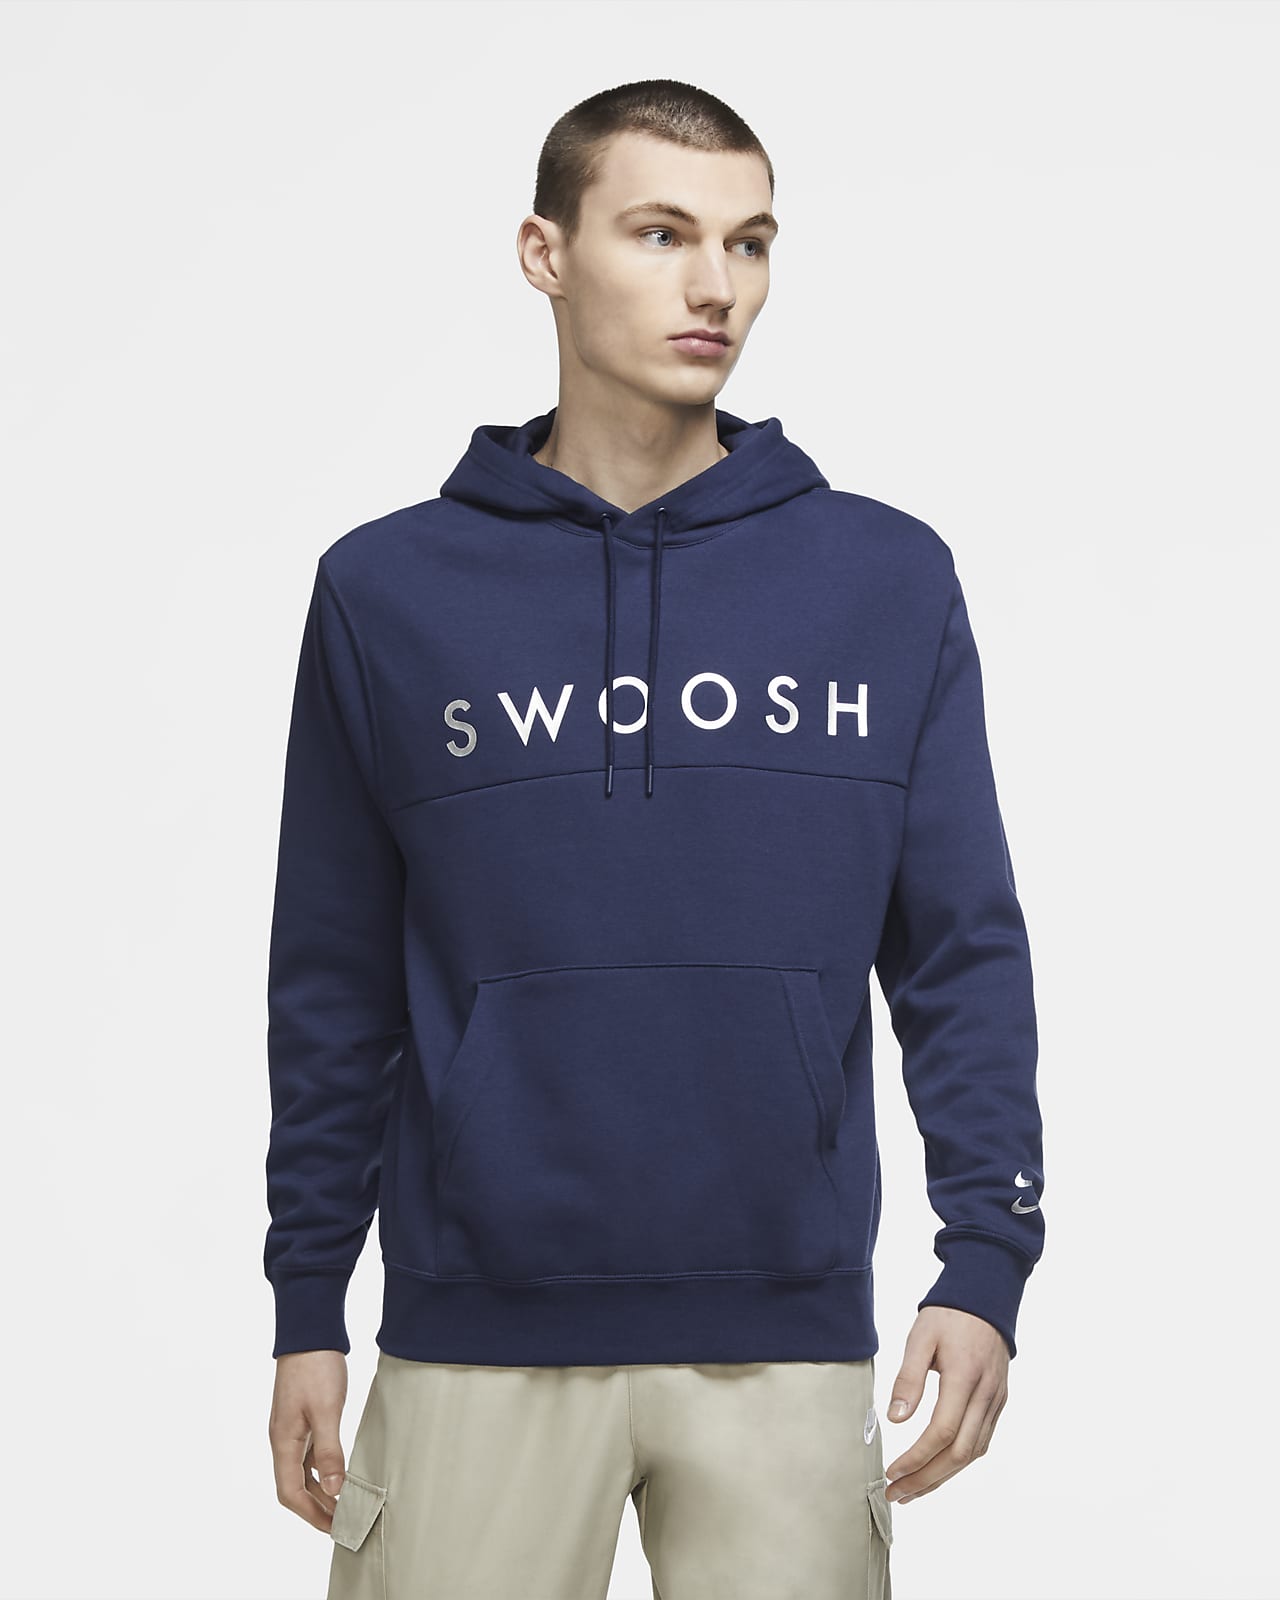 women's swoosh pullover hoodie nike sportswear